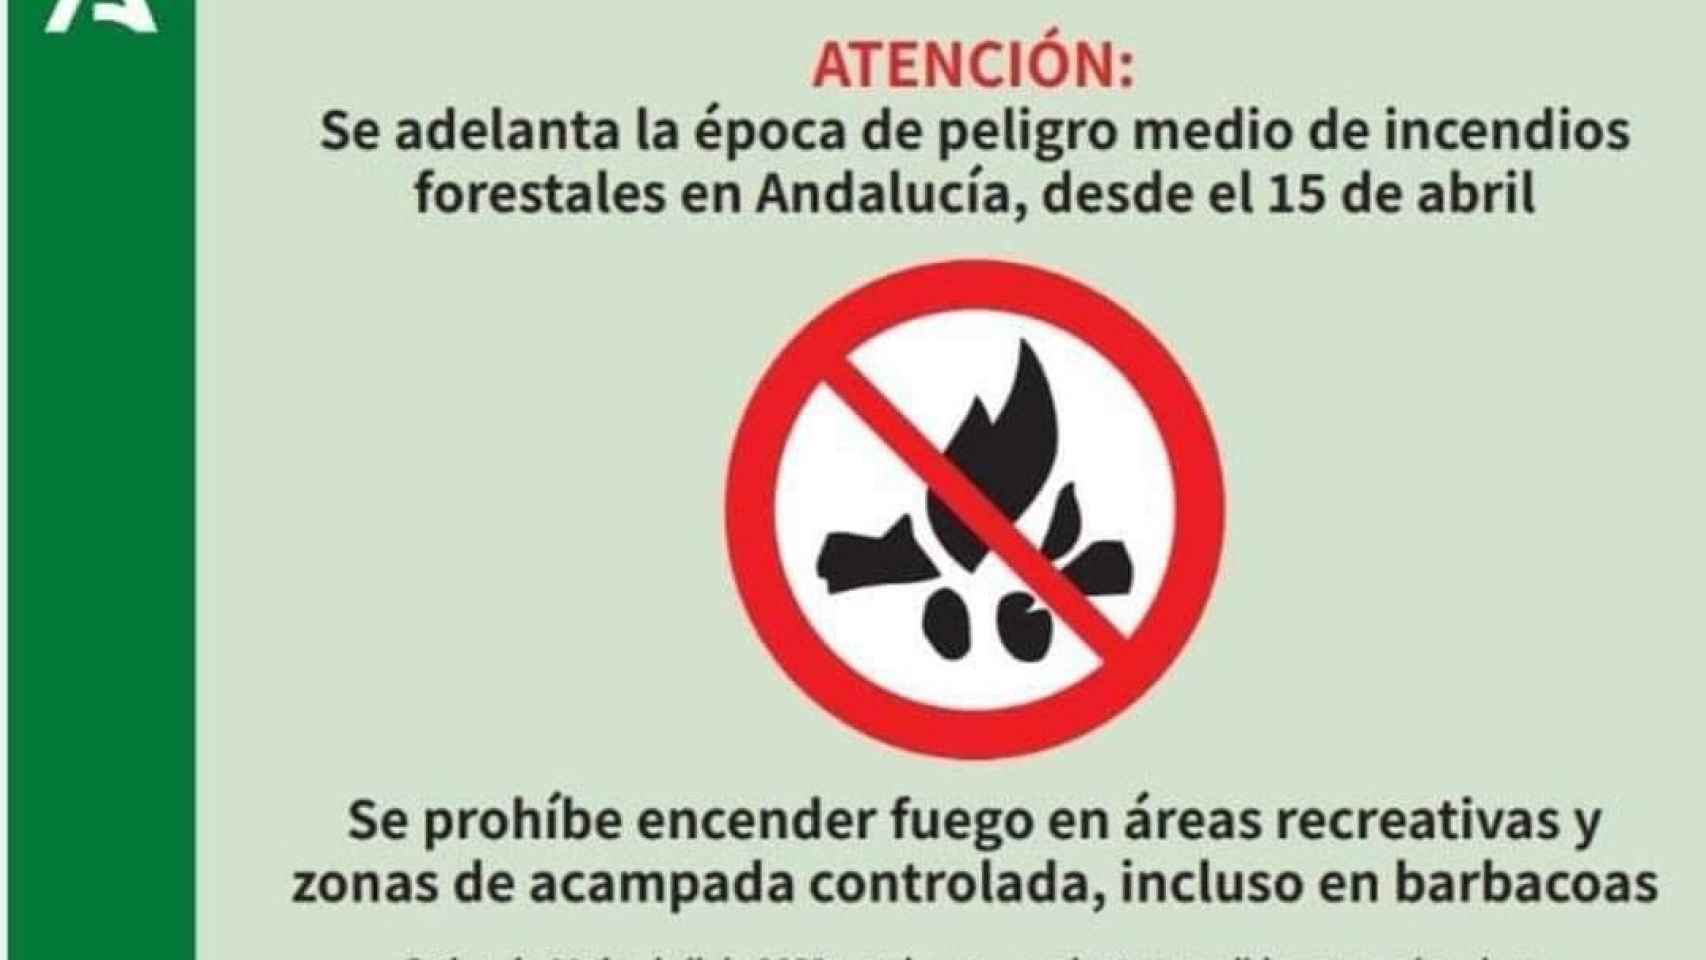 No hagas barbacoas en Málaga: la temporada de incendios forestales se ha adelantado